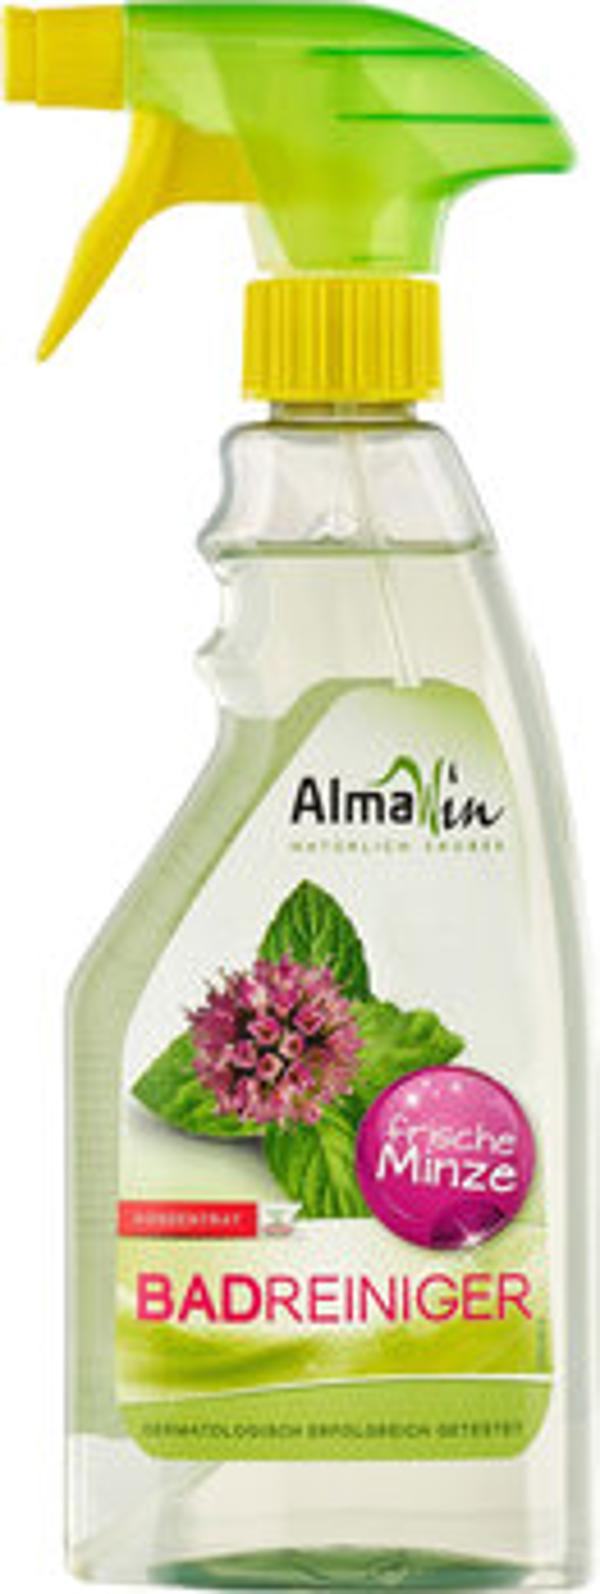 Produktfoto zu Almawin Bad-Reiniger Sprayer 500ml